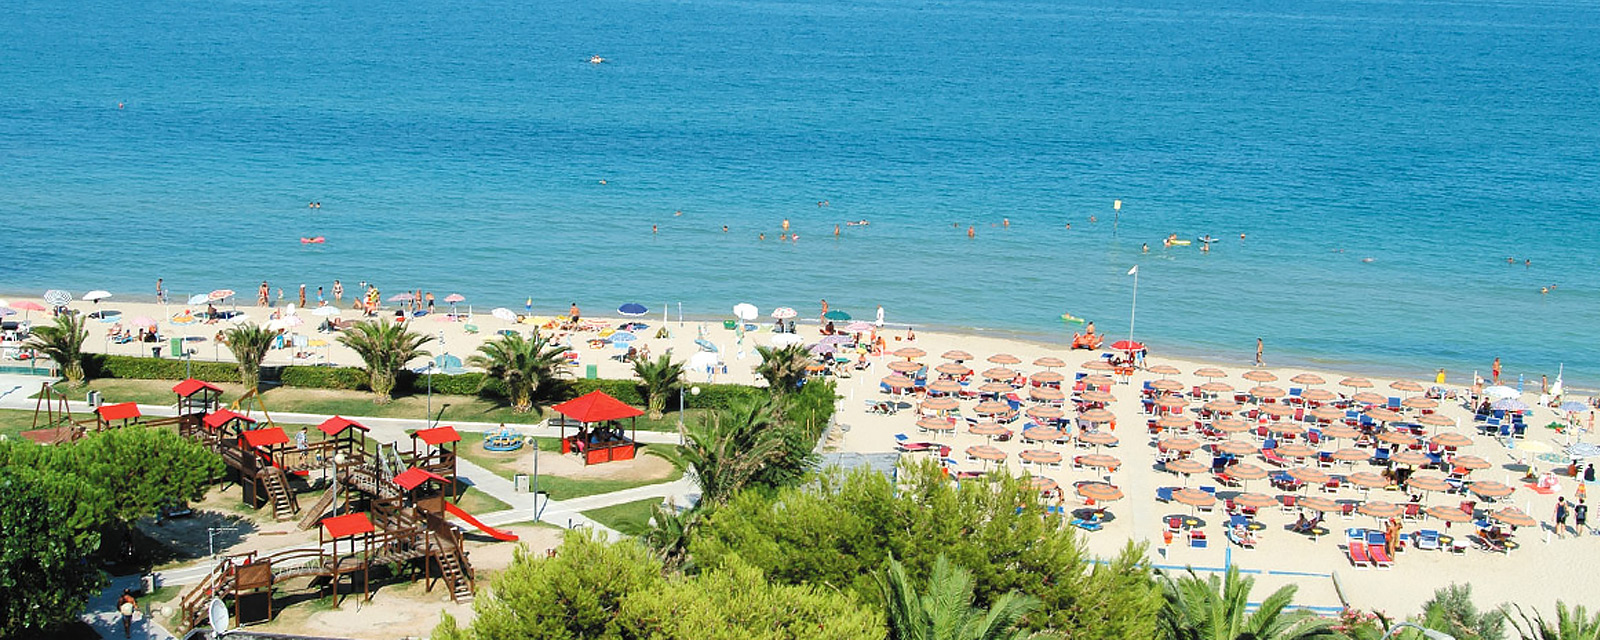 hotel alba adriatica mare boracay vacanze